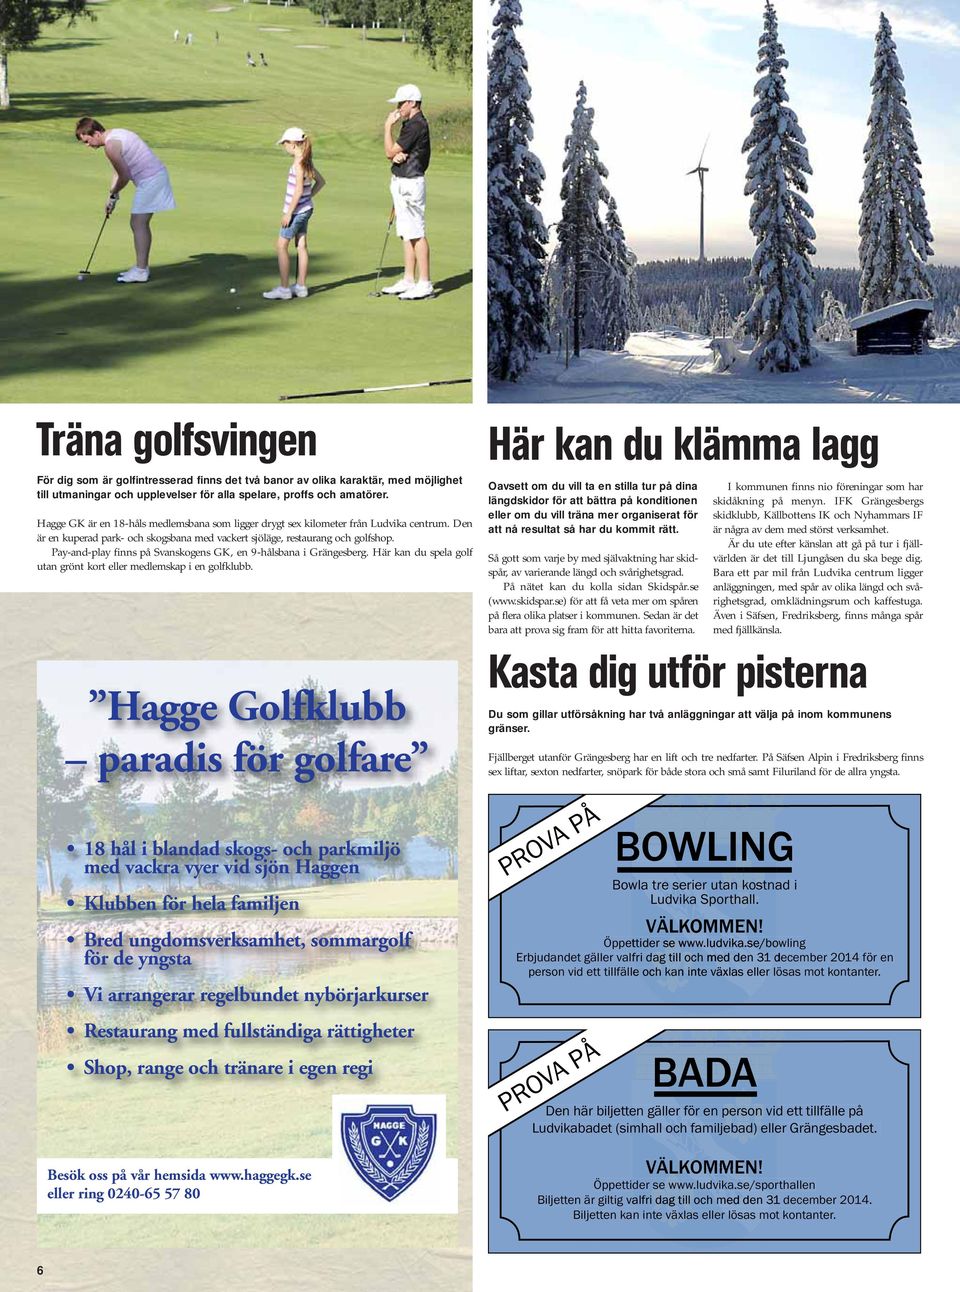 Pay-and-play finns på Svanskogens GK, en 9-hålsbana i Grängesberg. Här kan du spela golf utan grönt kort eller medlemskap i en golfklubb.